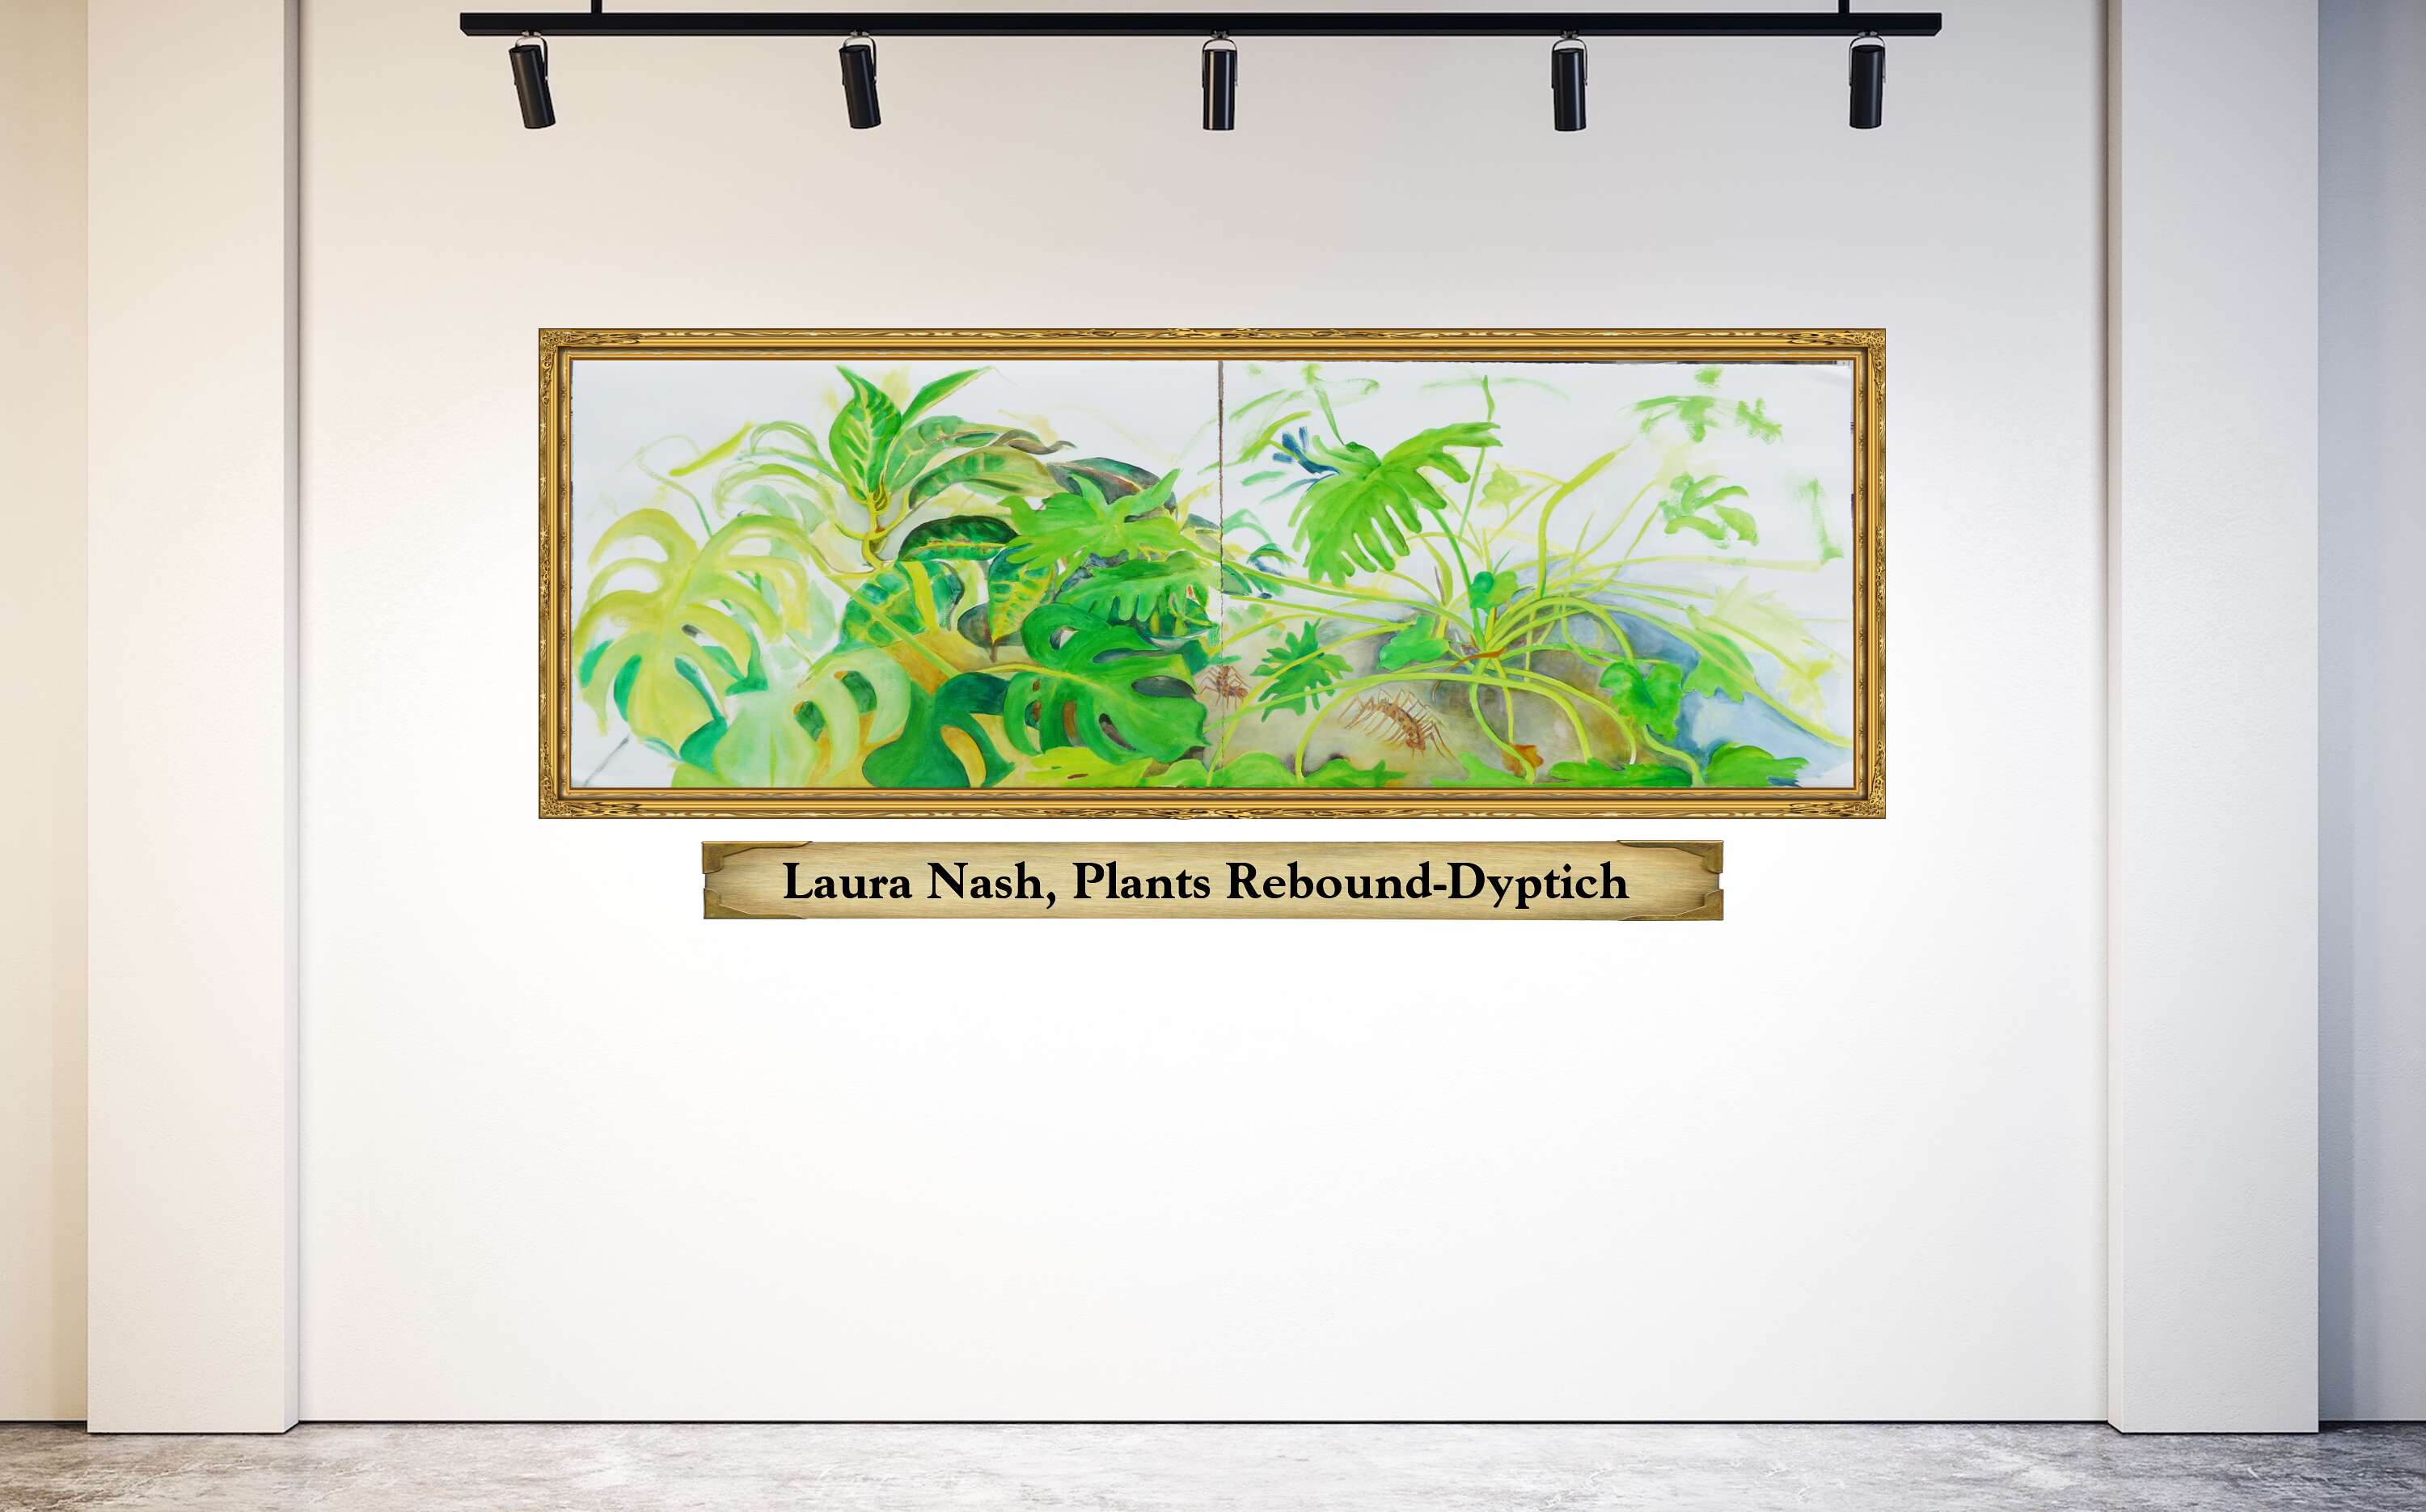 Laura Nash, Plants Rebound-Dyptich 